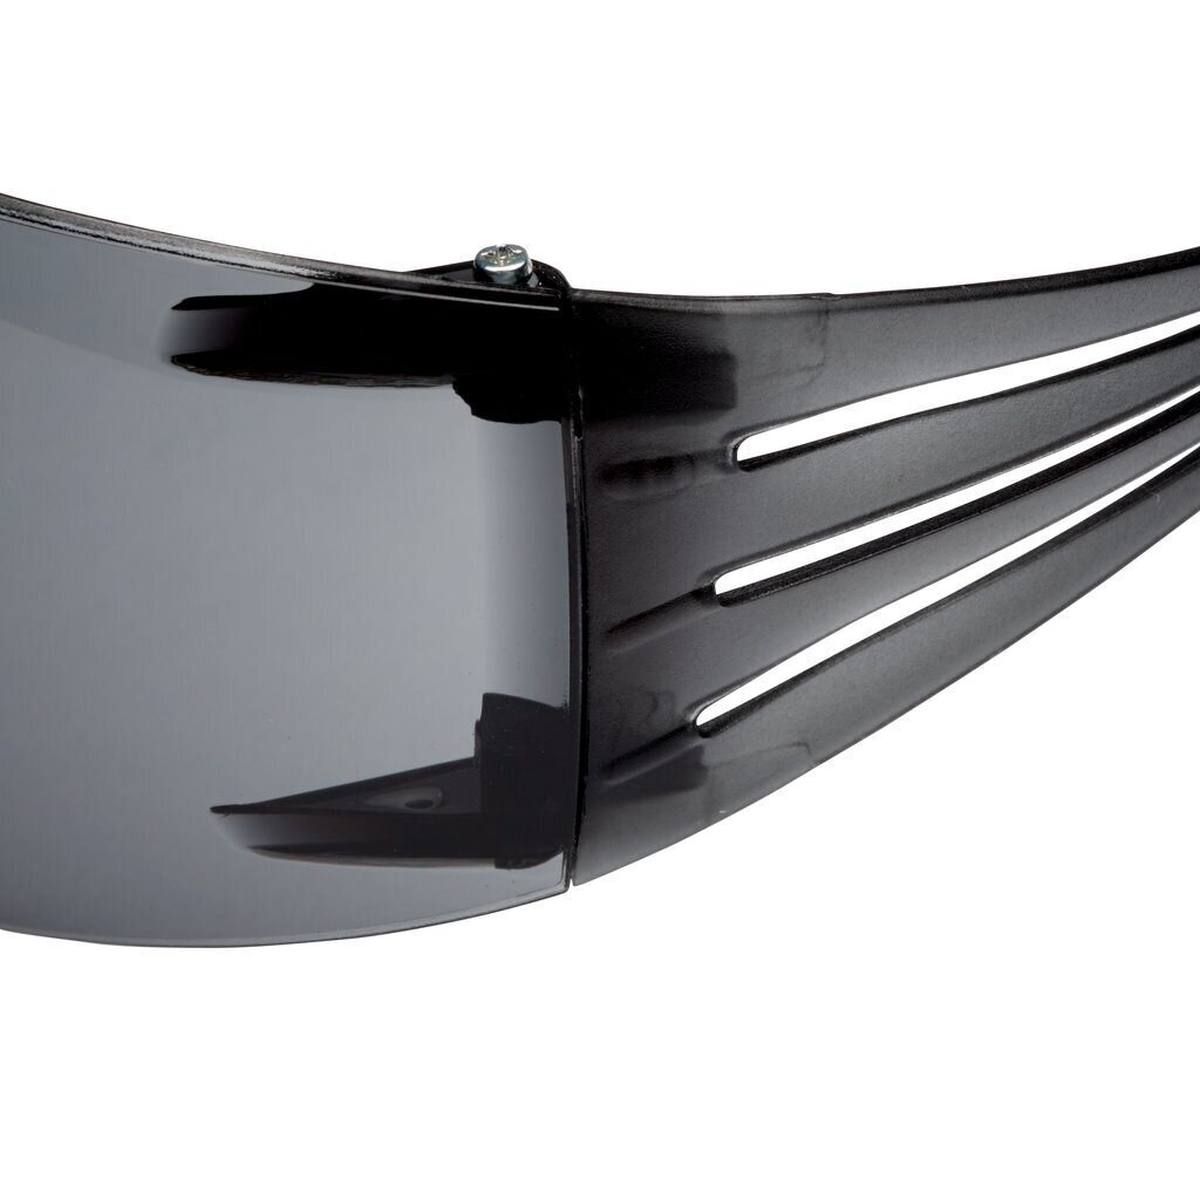 3M SecureFit 200 veiligheidsbril, anti-kras/anti-condens coating, grijs glas, SF202AS/AF-EU